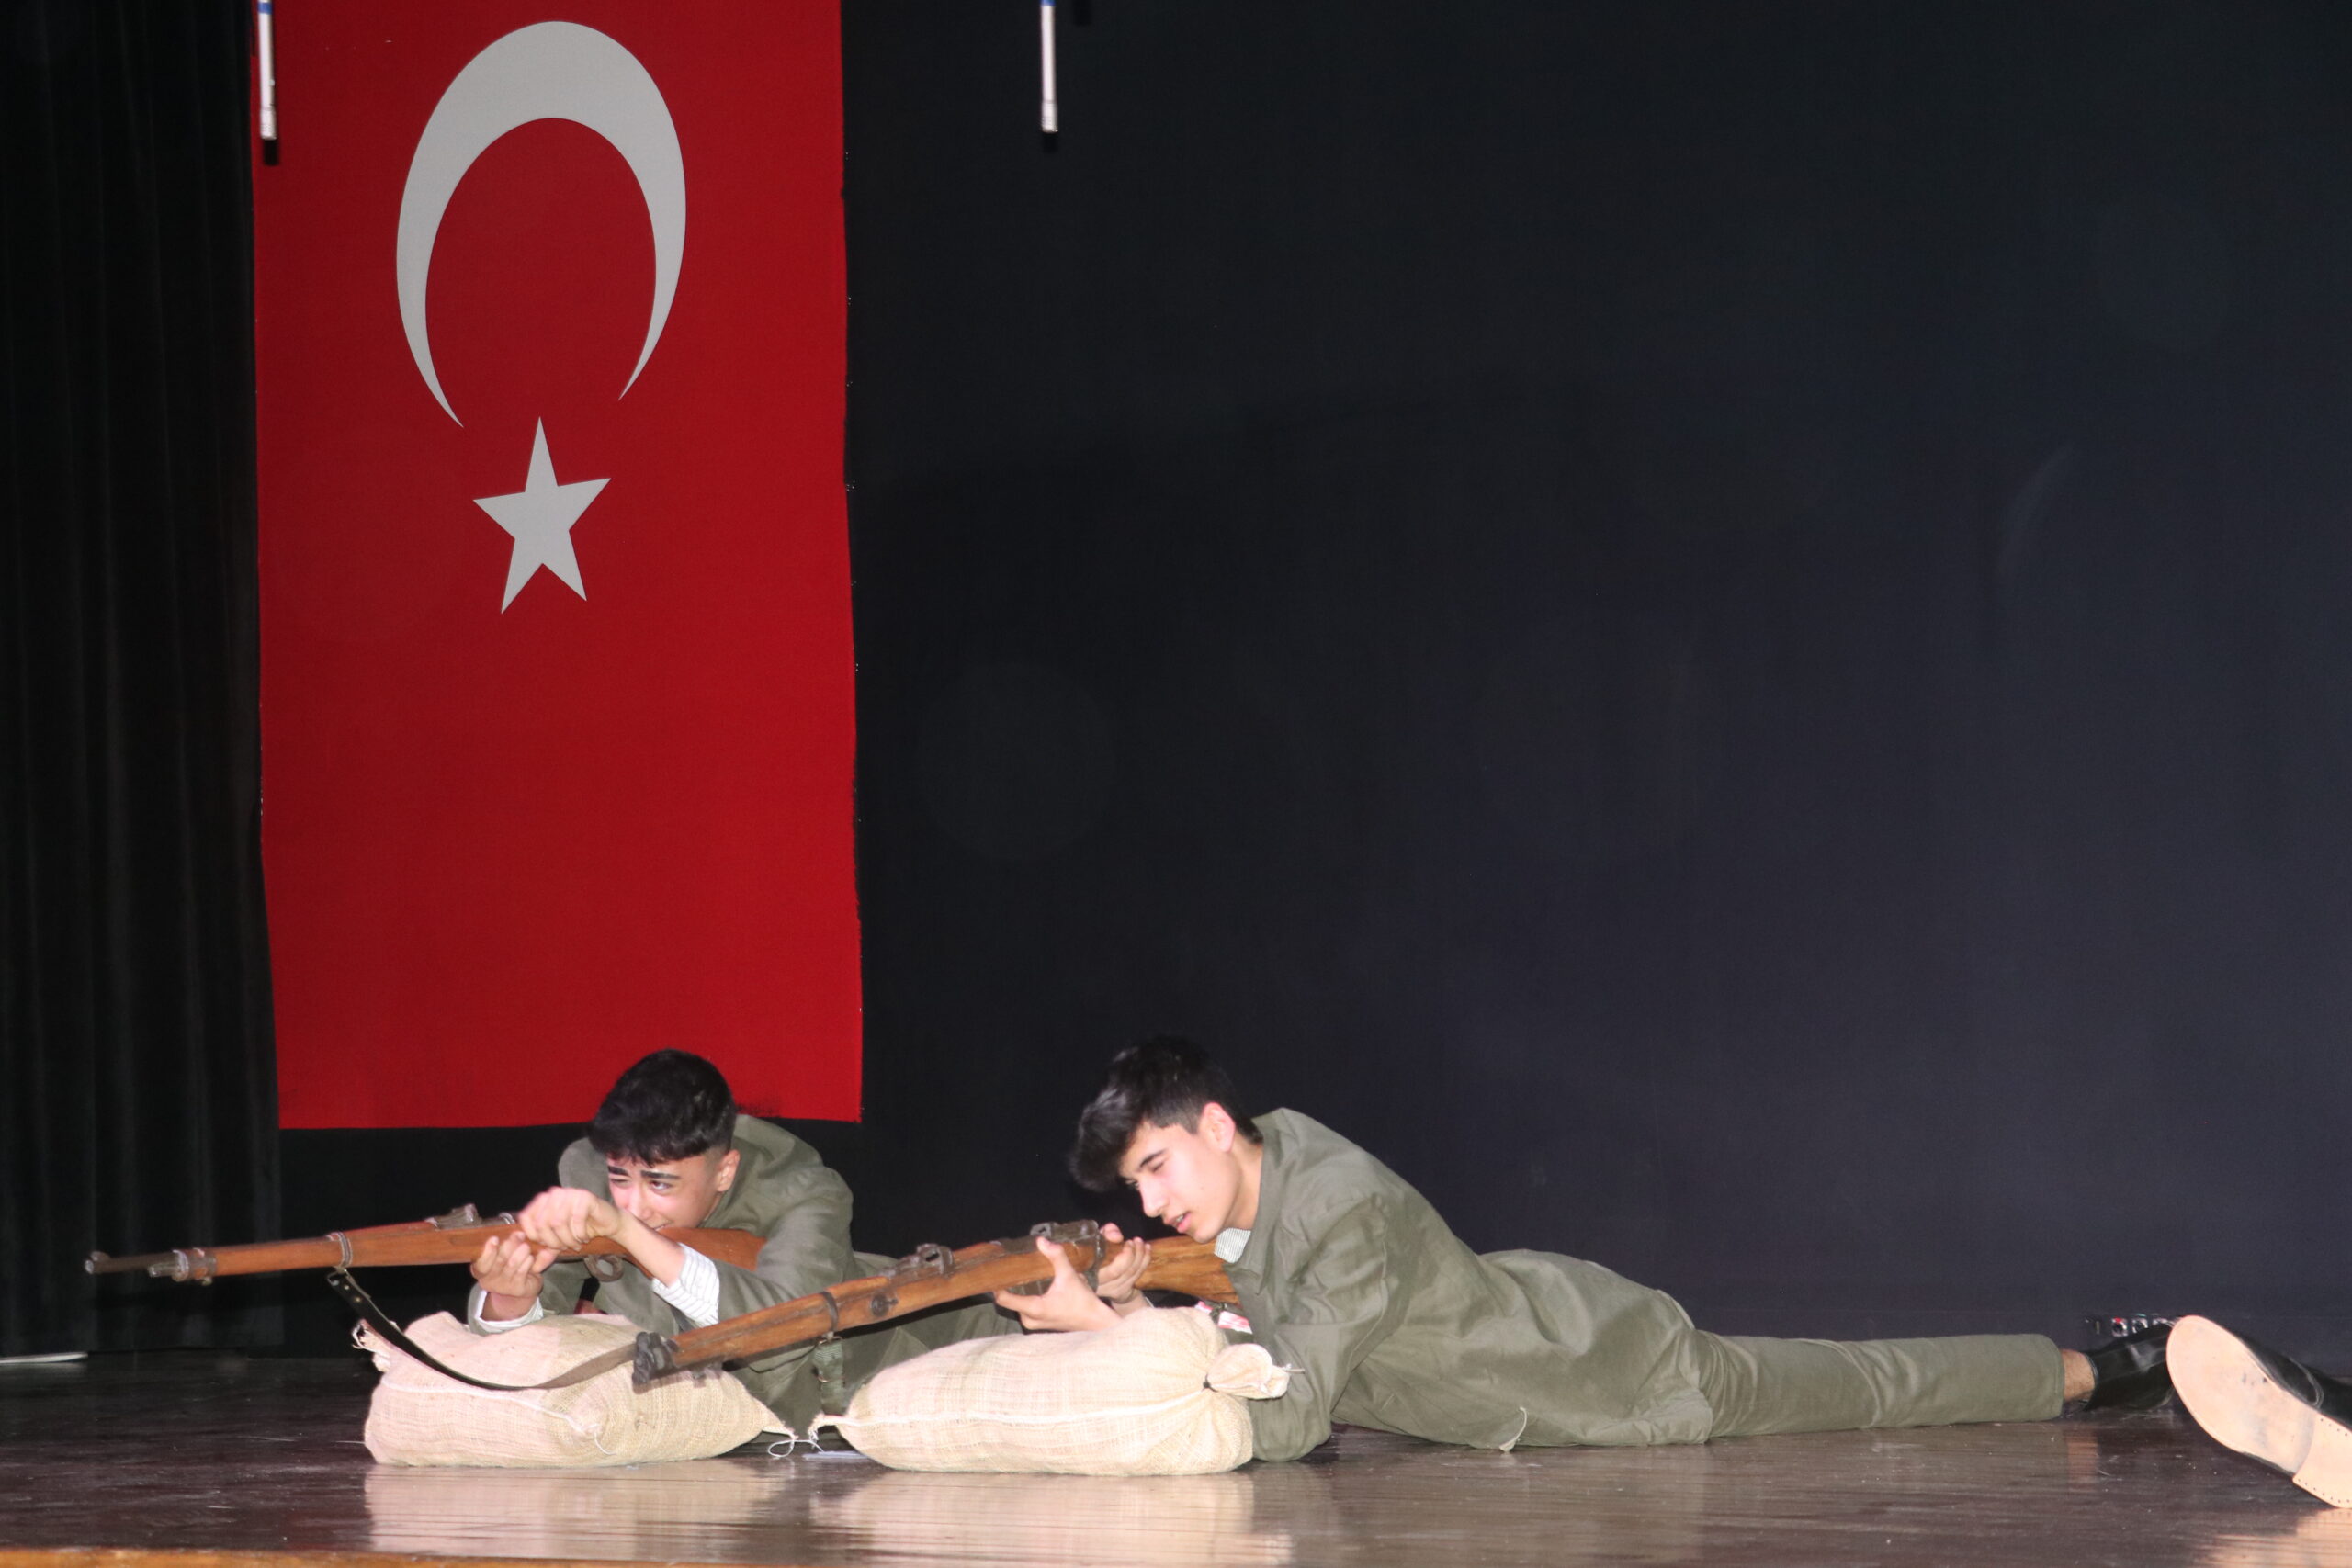 18 Mart Şehitleri Anma Günü ve Çanakkale Deniz Zaferi’nin 109. yıl dönümü dolayısıyla tiyatro gösterisi düzenledi